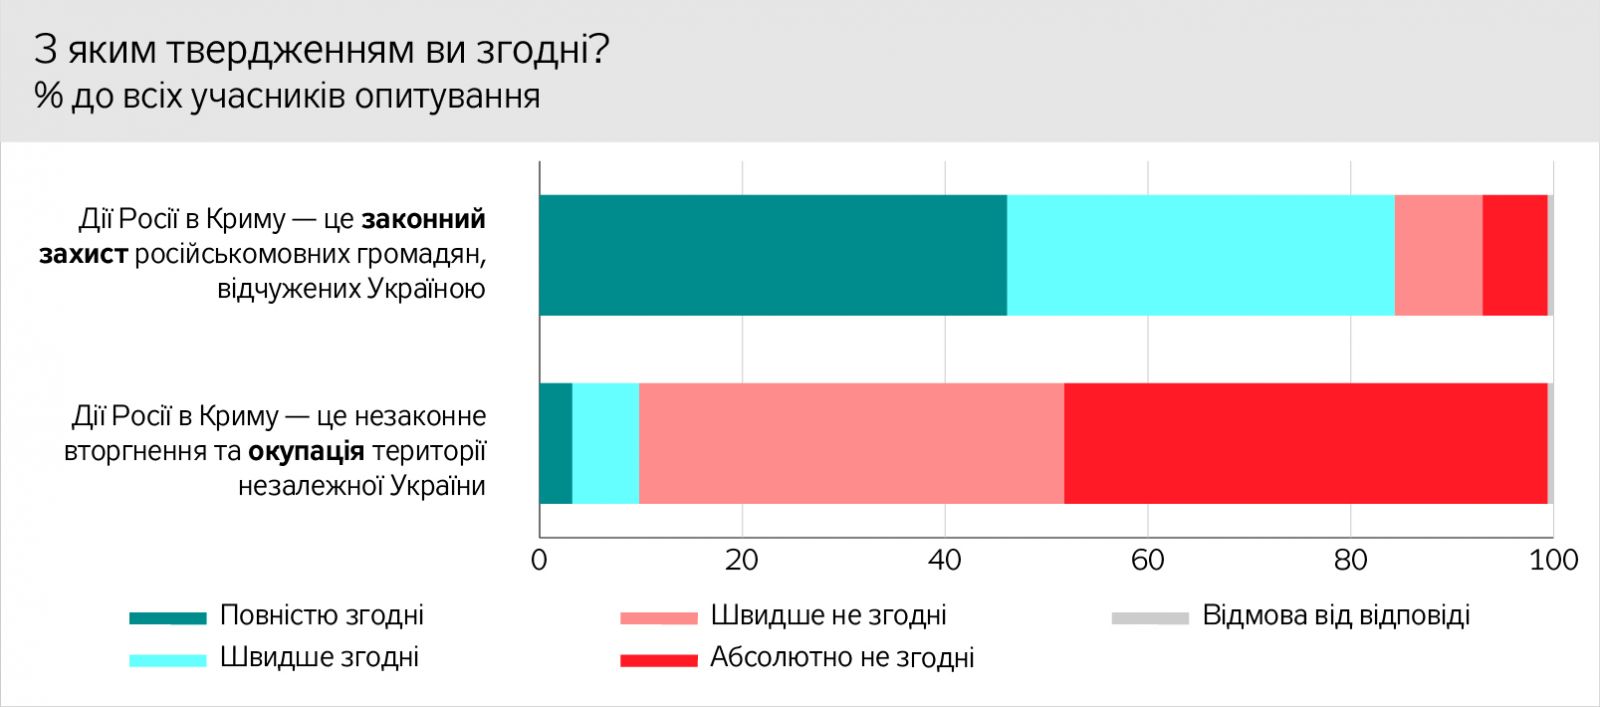 Реінтеграція Донбасу: більшість жителів ОРДЛО вважають війну внутрішнім конфліктом, але 58% називають себе громадянами України, фото — ДТ